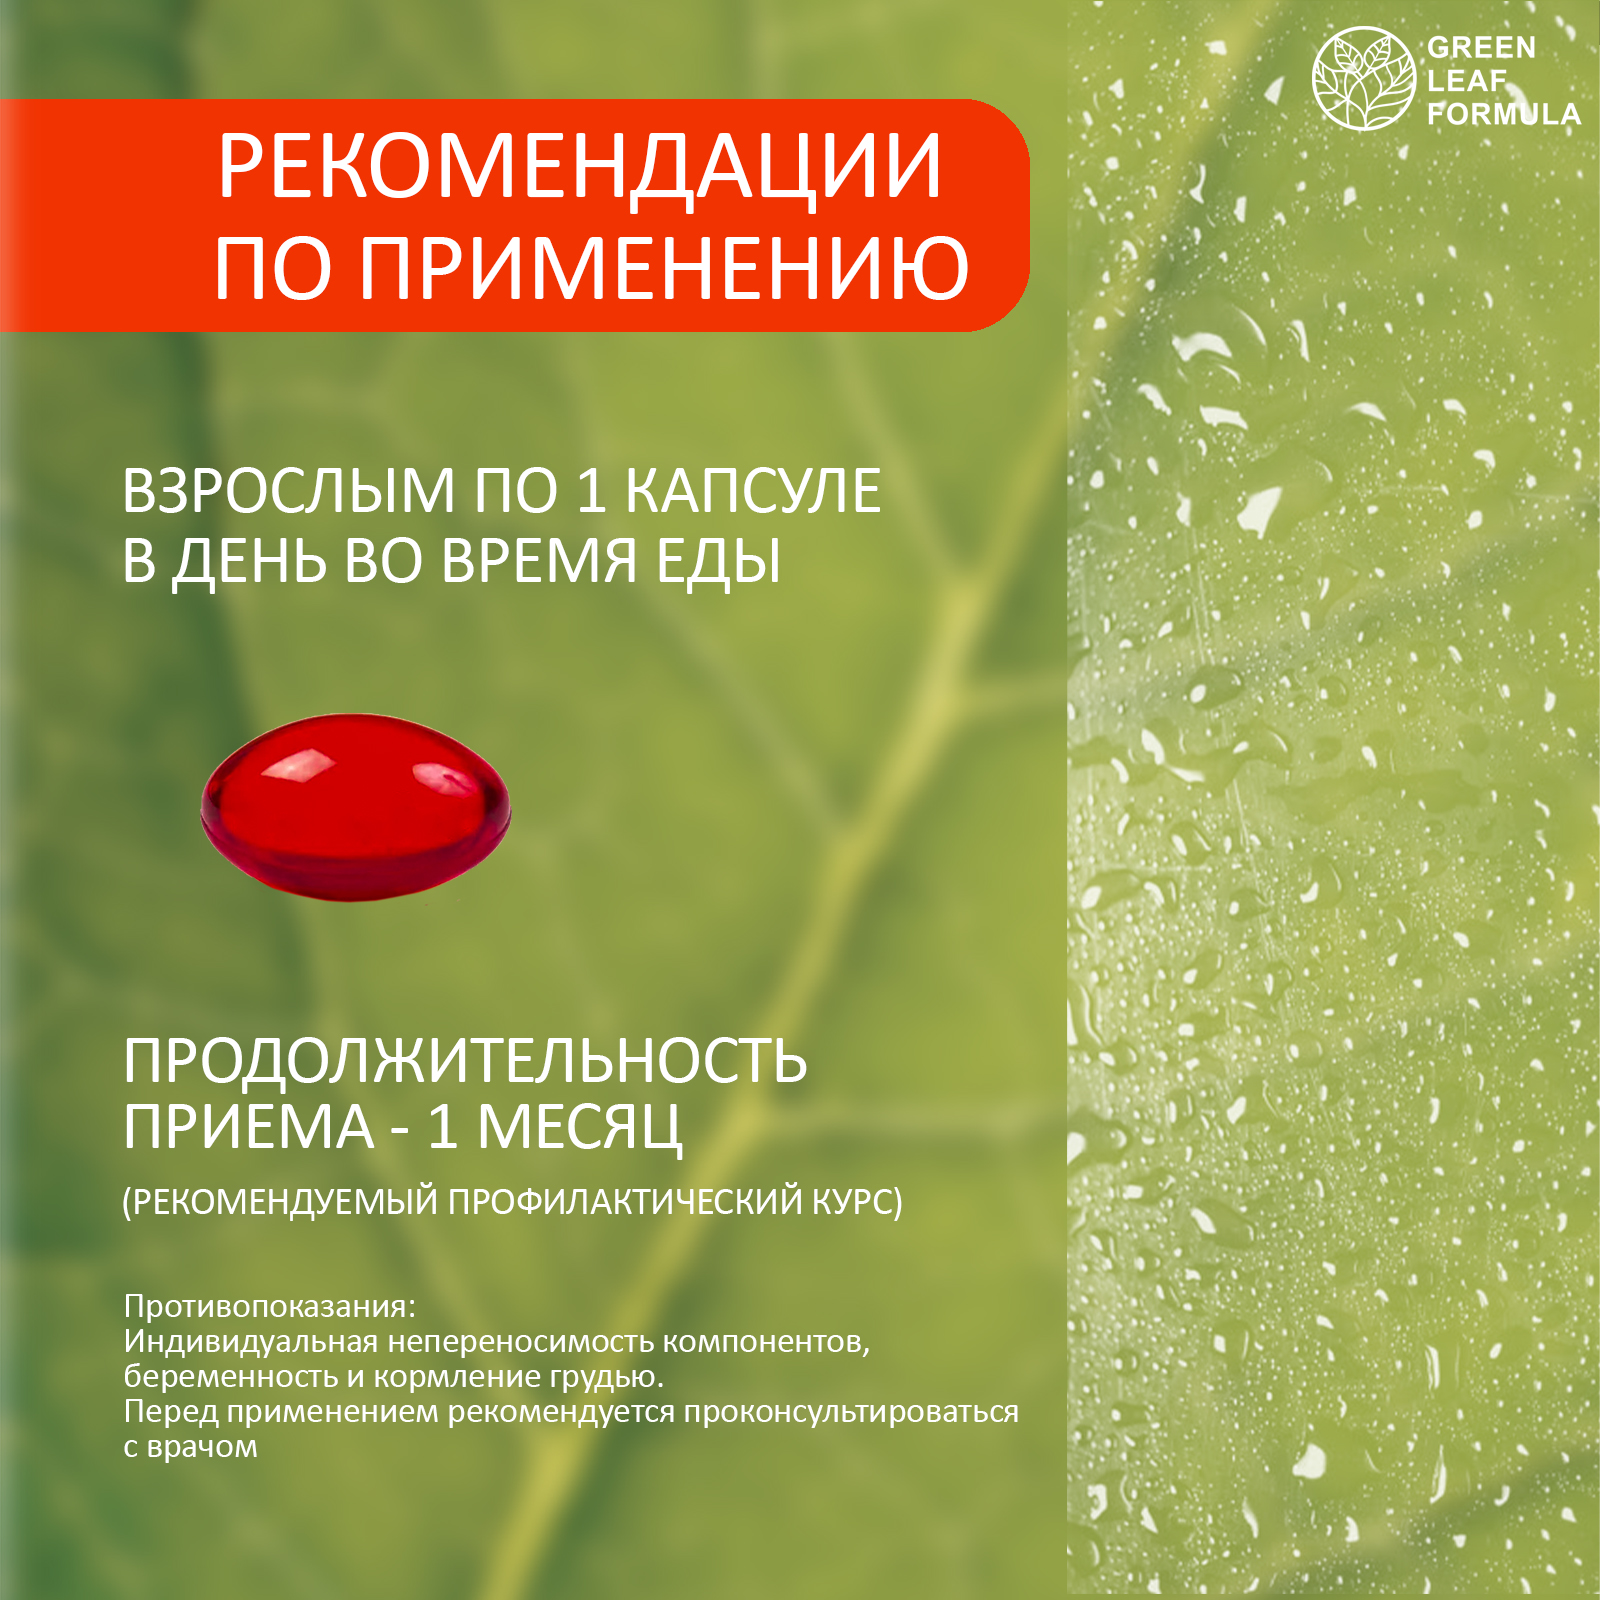 Витамины для глаз и зрения Green Leaf Formula лютеин комплекс черника витамин А астаксантин антиоксиданты 2 банки - фото 15